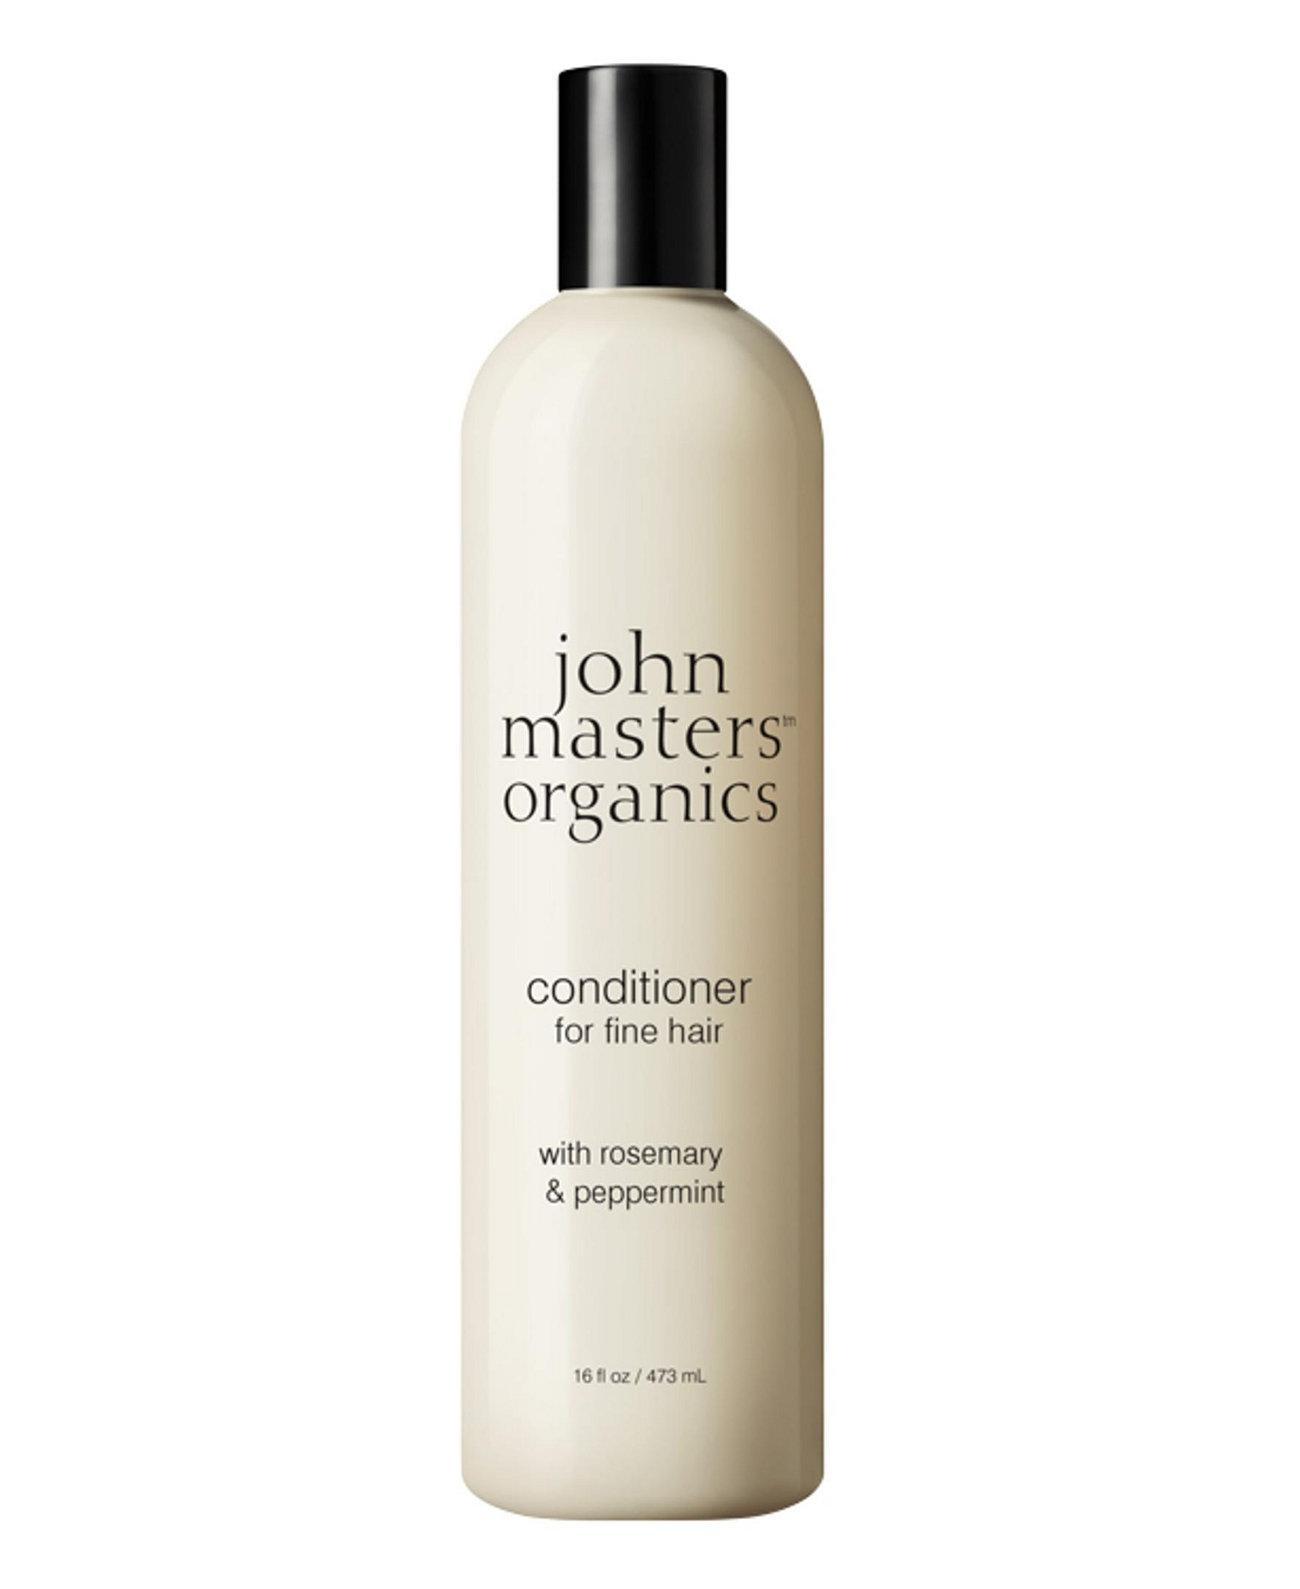 Кондиционер для тонких волос с розмарином и мятой, 16 унций. John Masters Organics